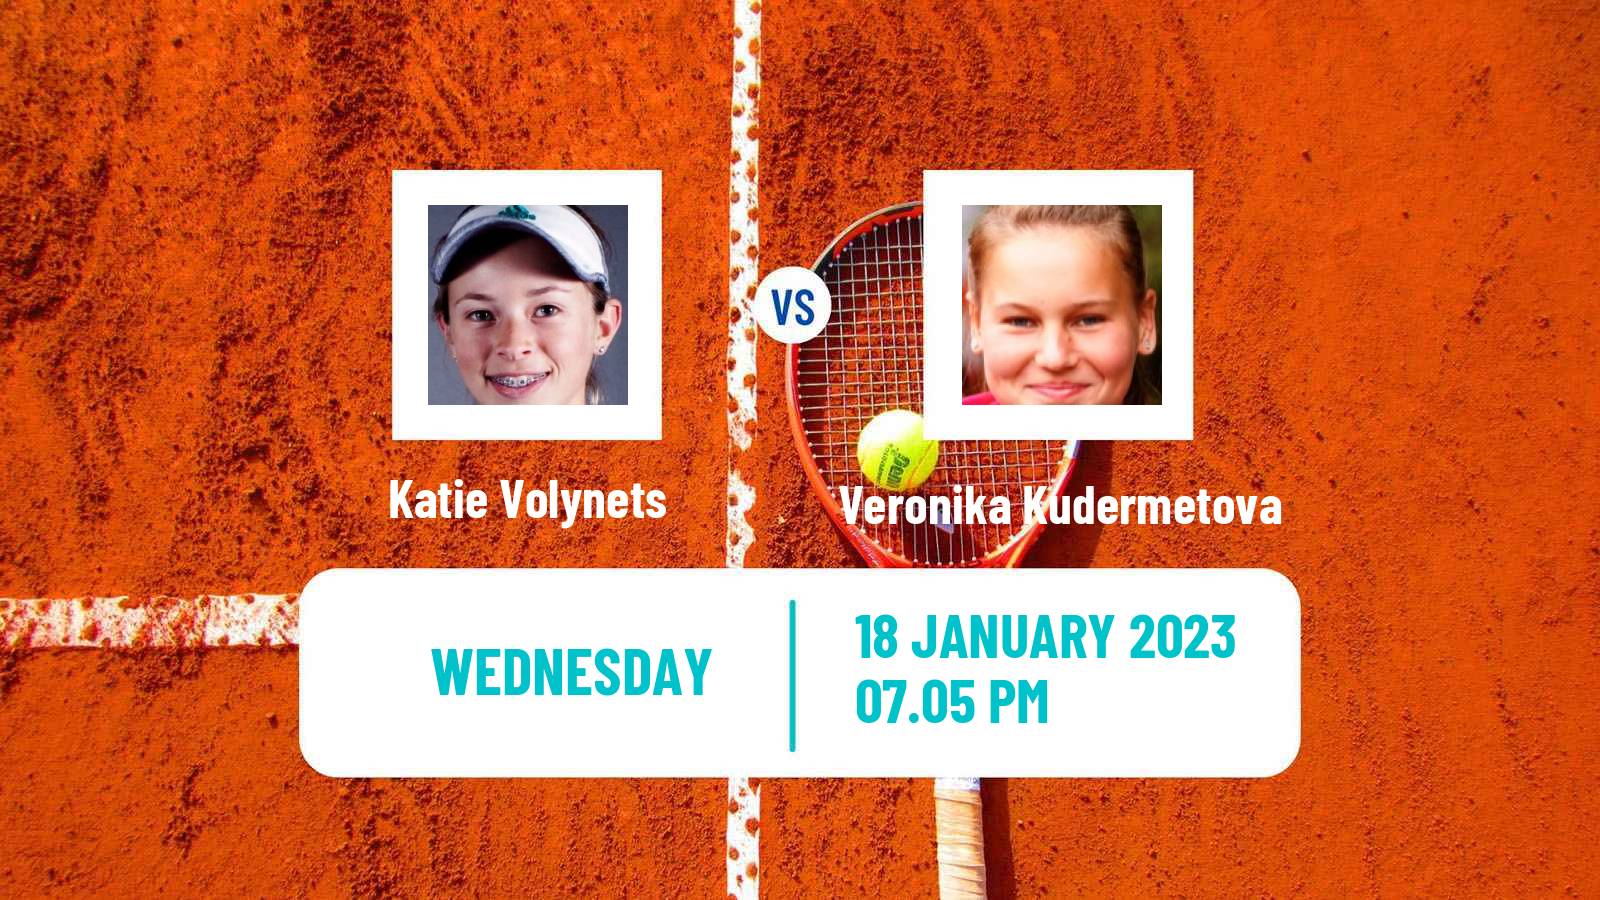 Tennis WTA Australian Open Katie Volynets - Veronika Kudermetova